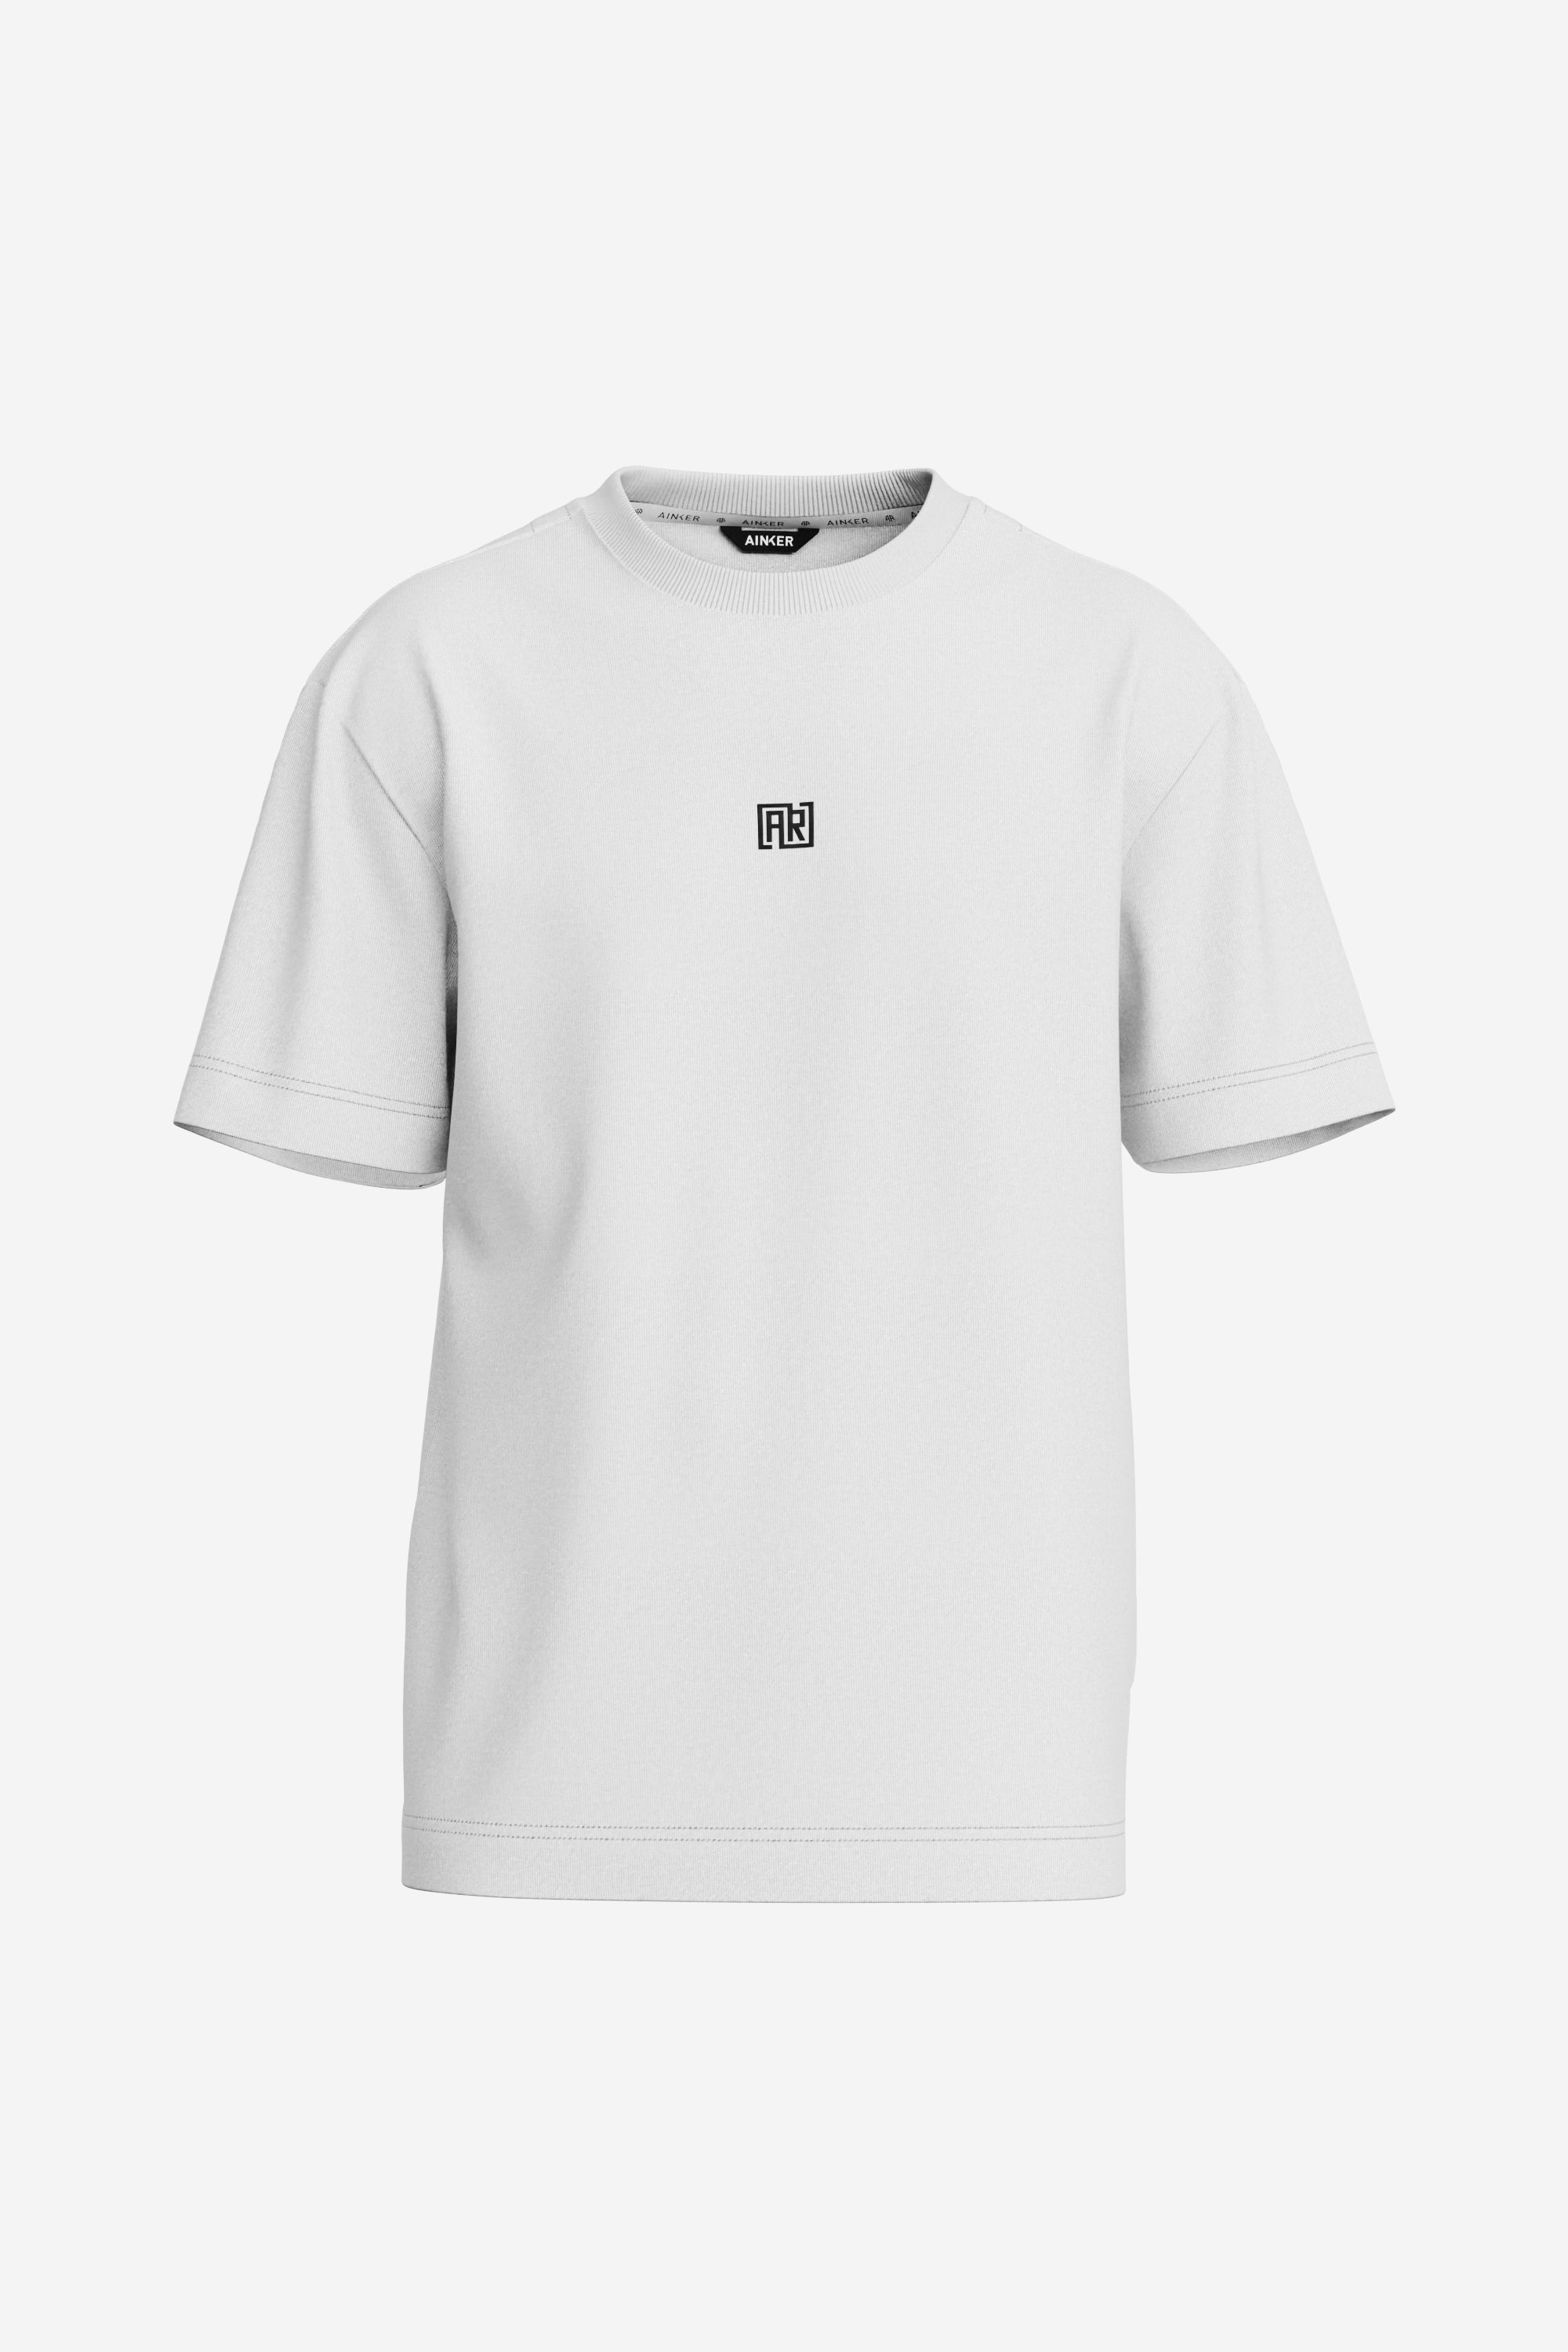 Square White Mercerize T-Shirt